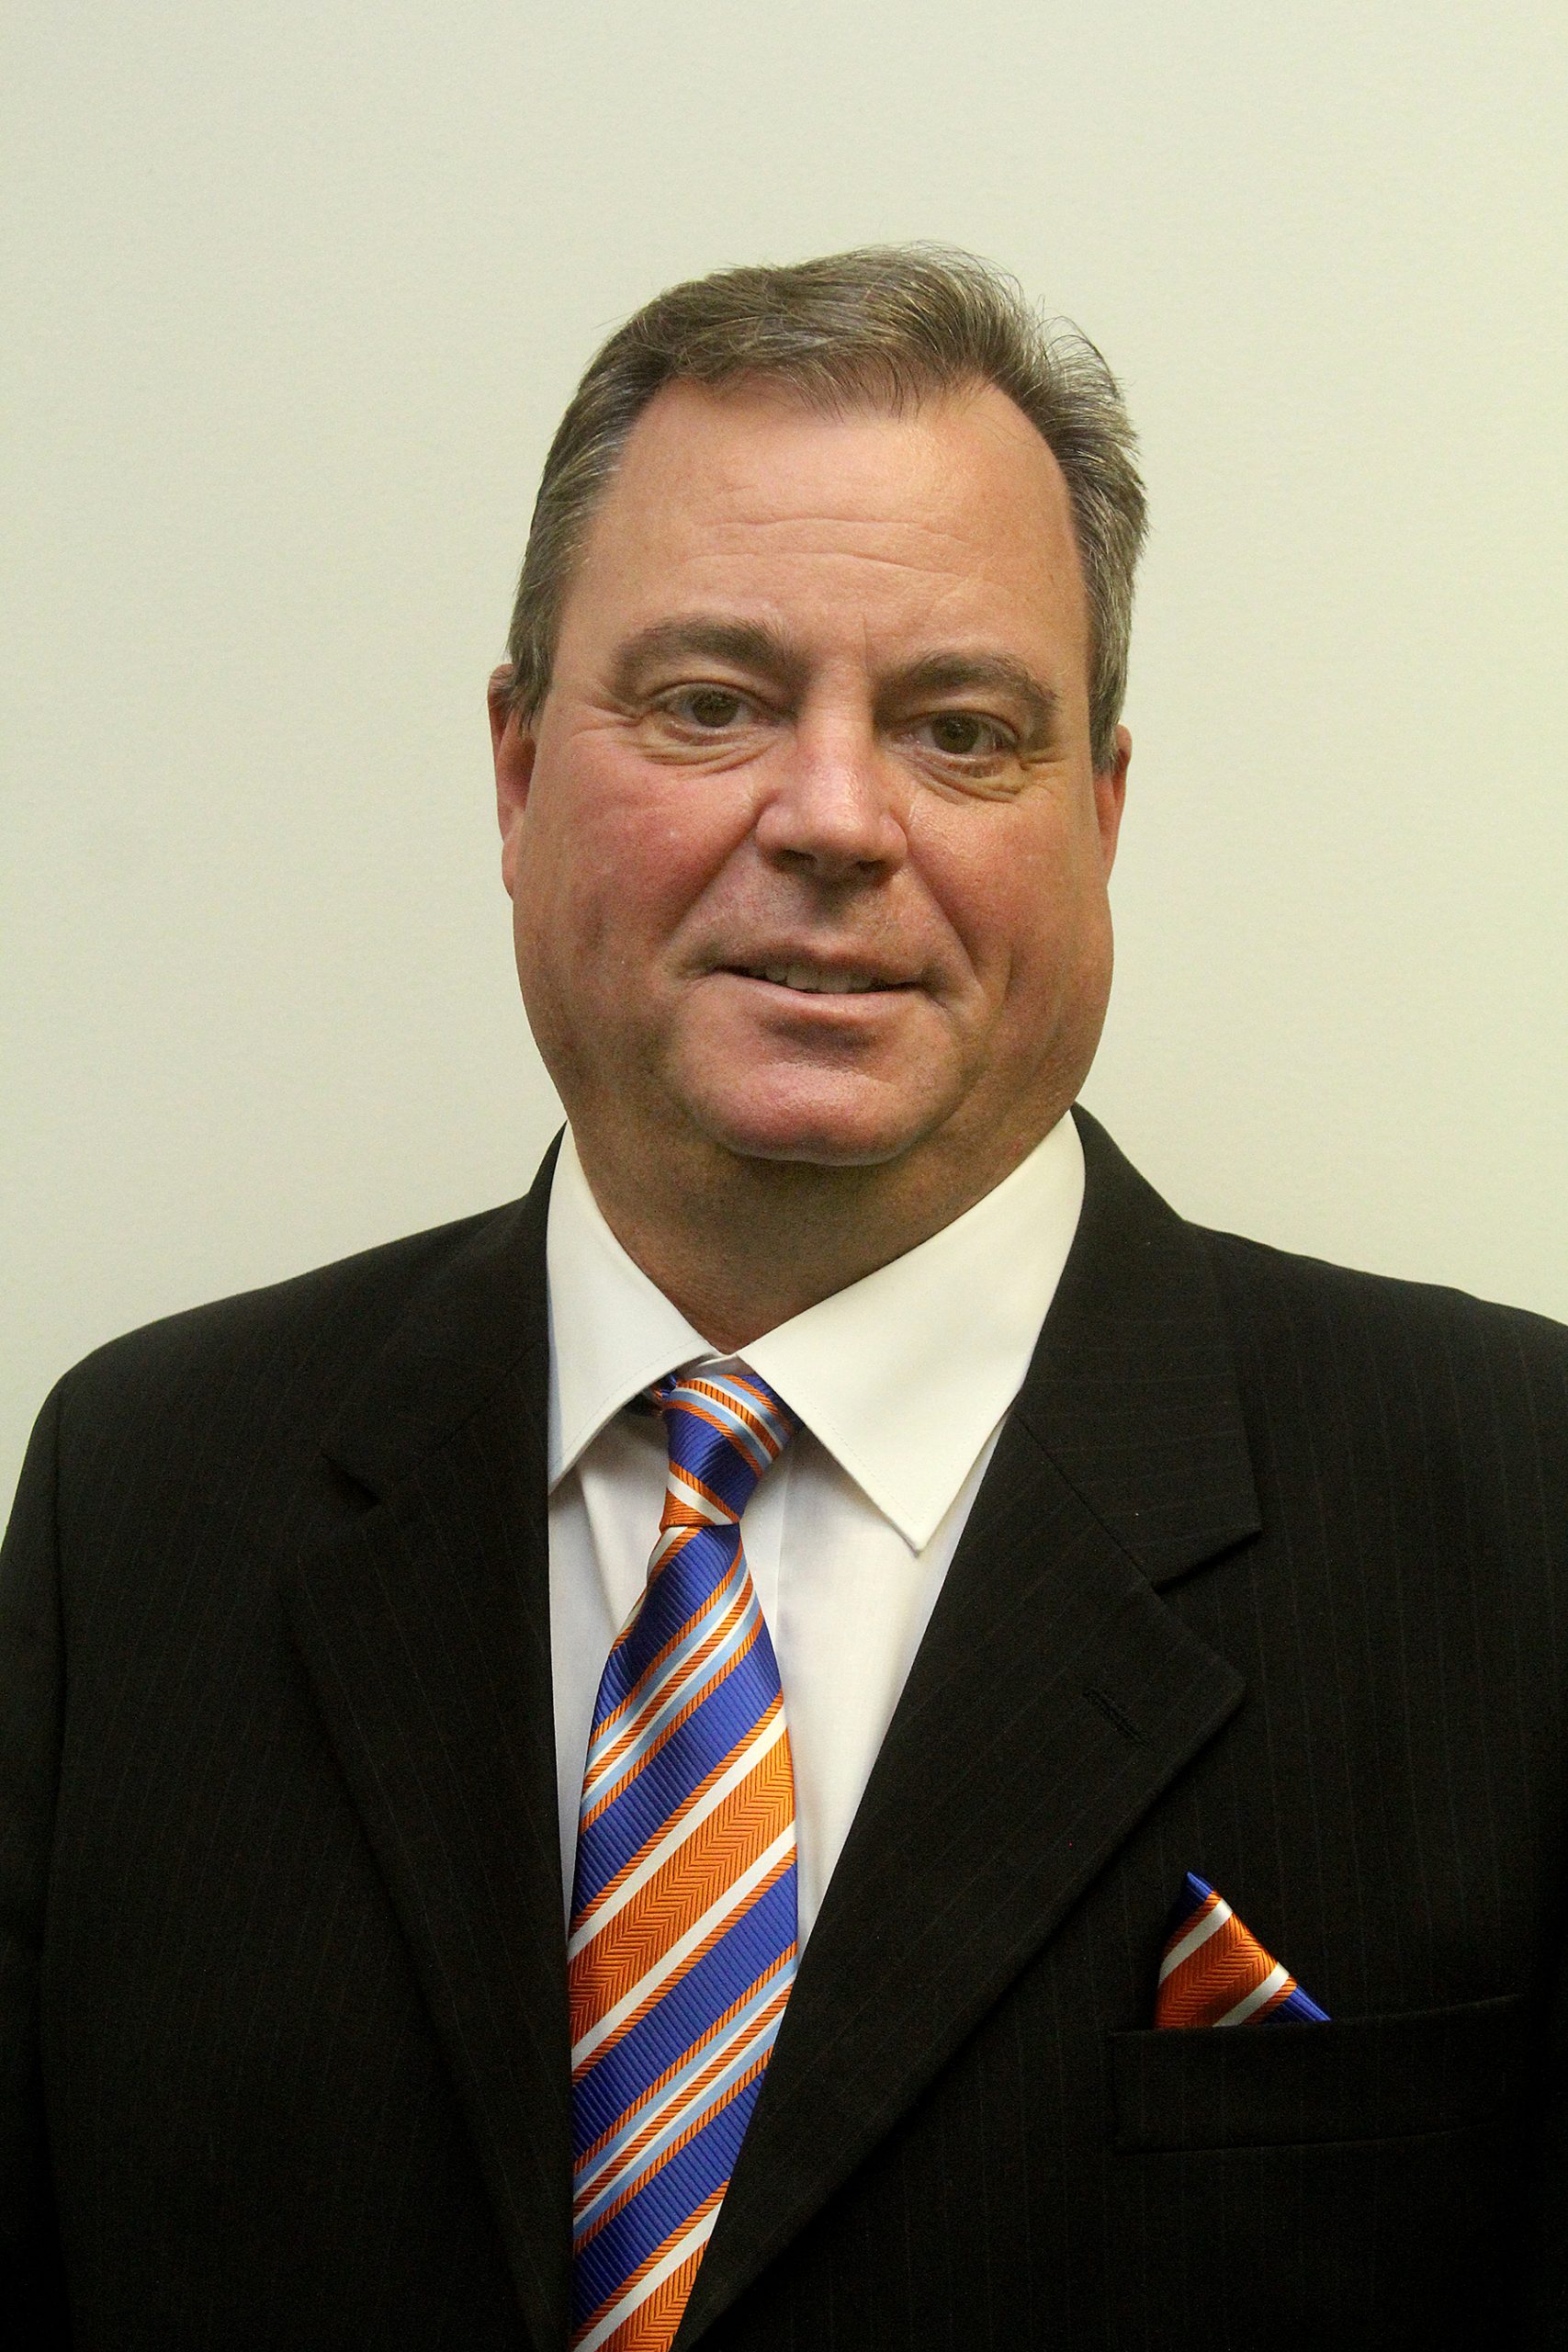 Board of Trustees member Shawn Boldt